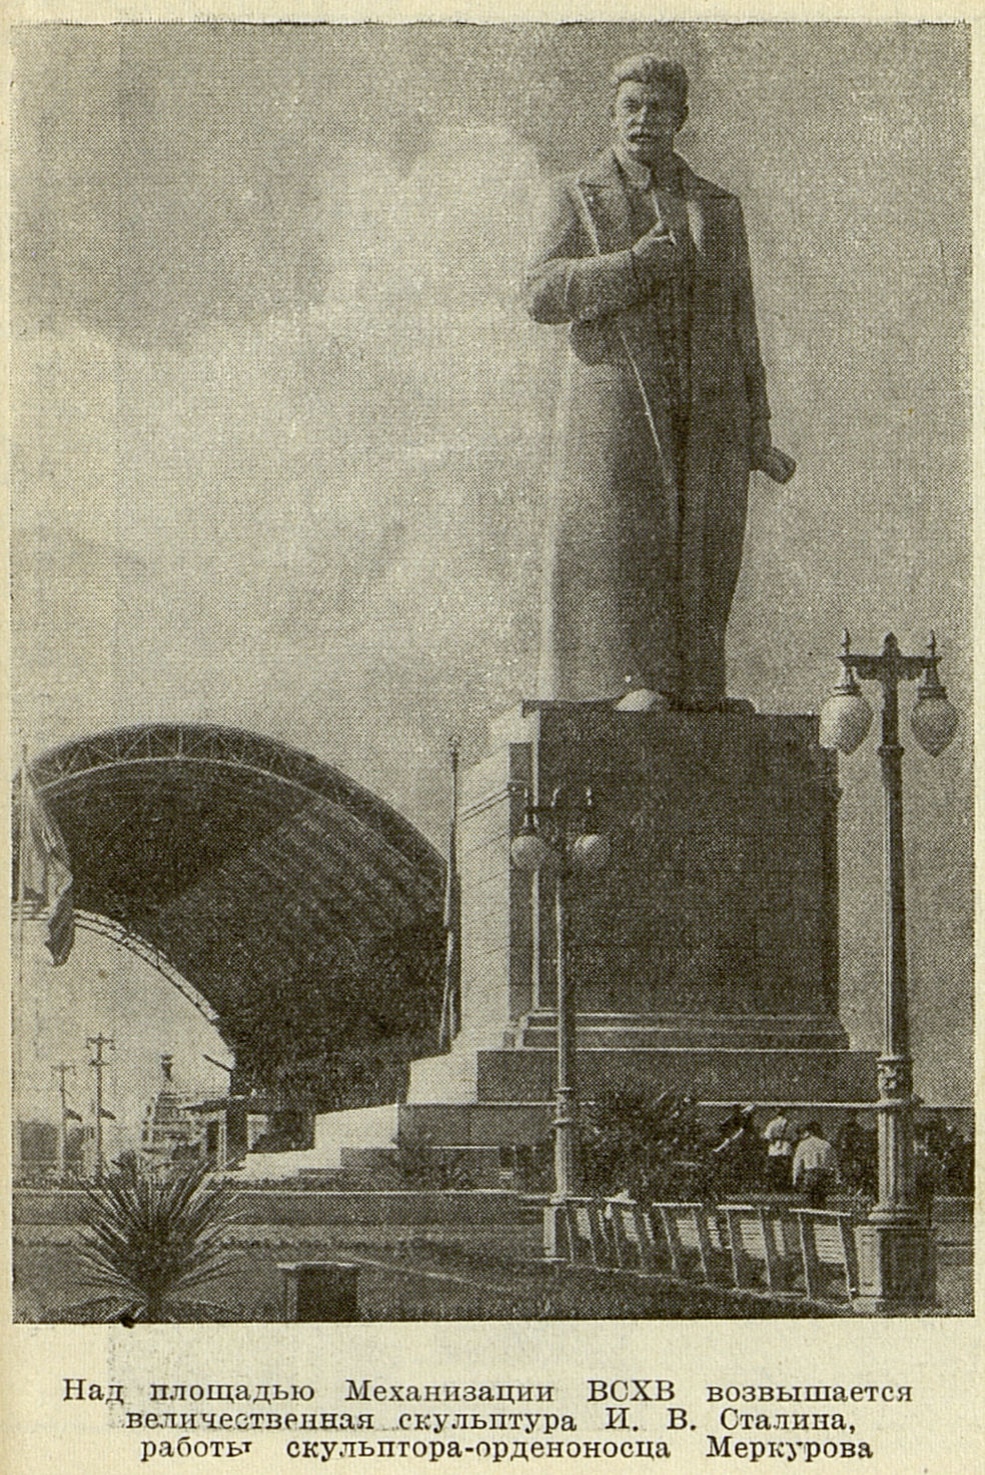 скульптура Сталина работы скульптора Меркурова